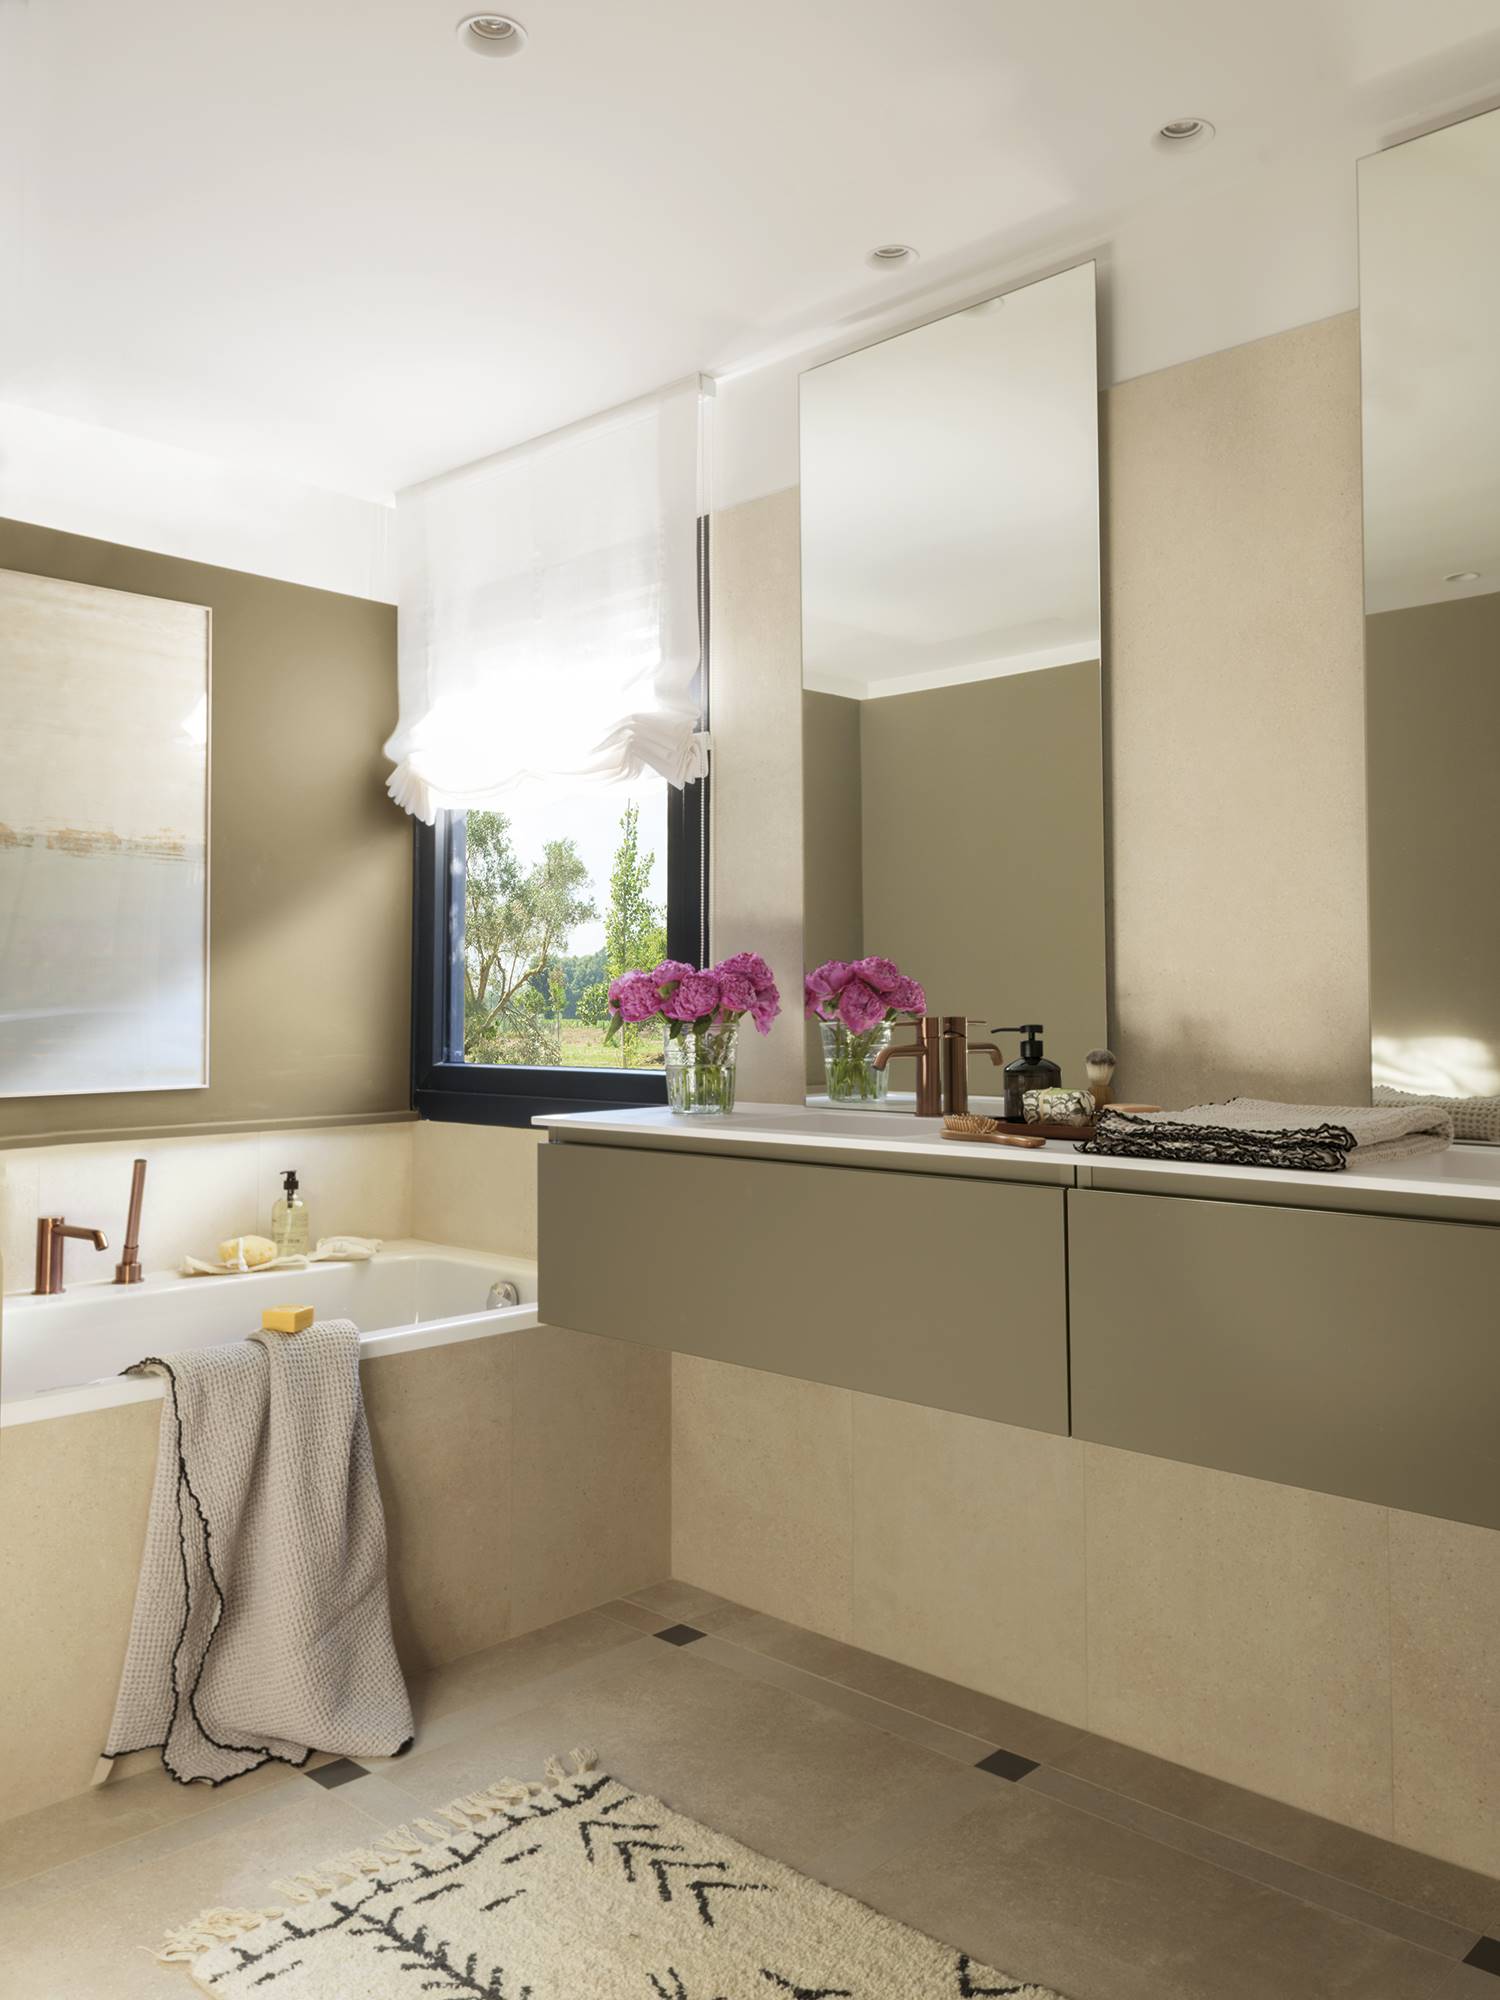 Baño en suite con bañera y mueble bajolavabo volado, estor blanco, grifería en acabado cobre y espejos sin marco.